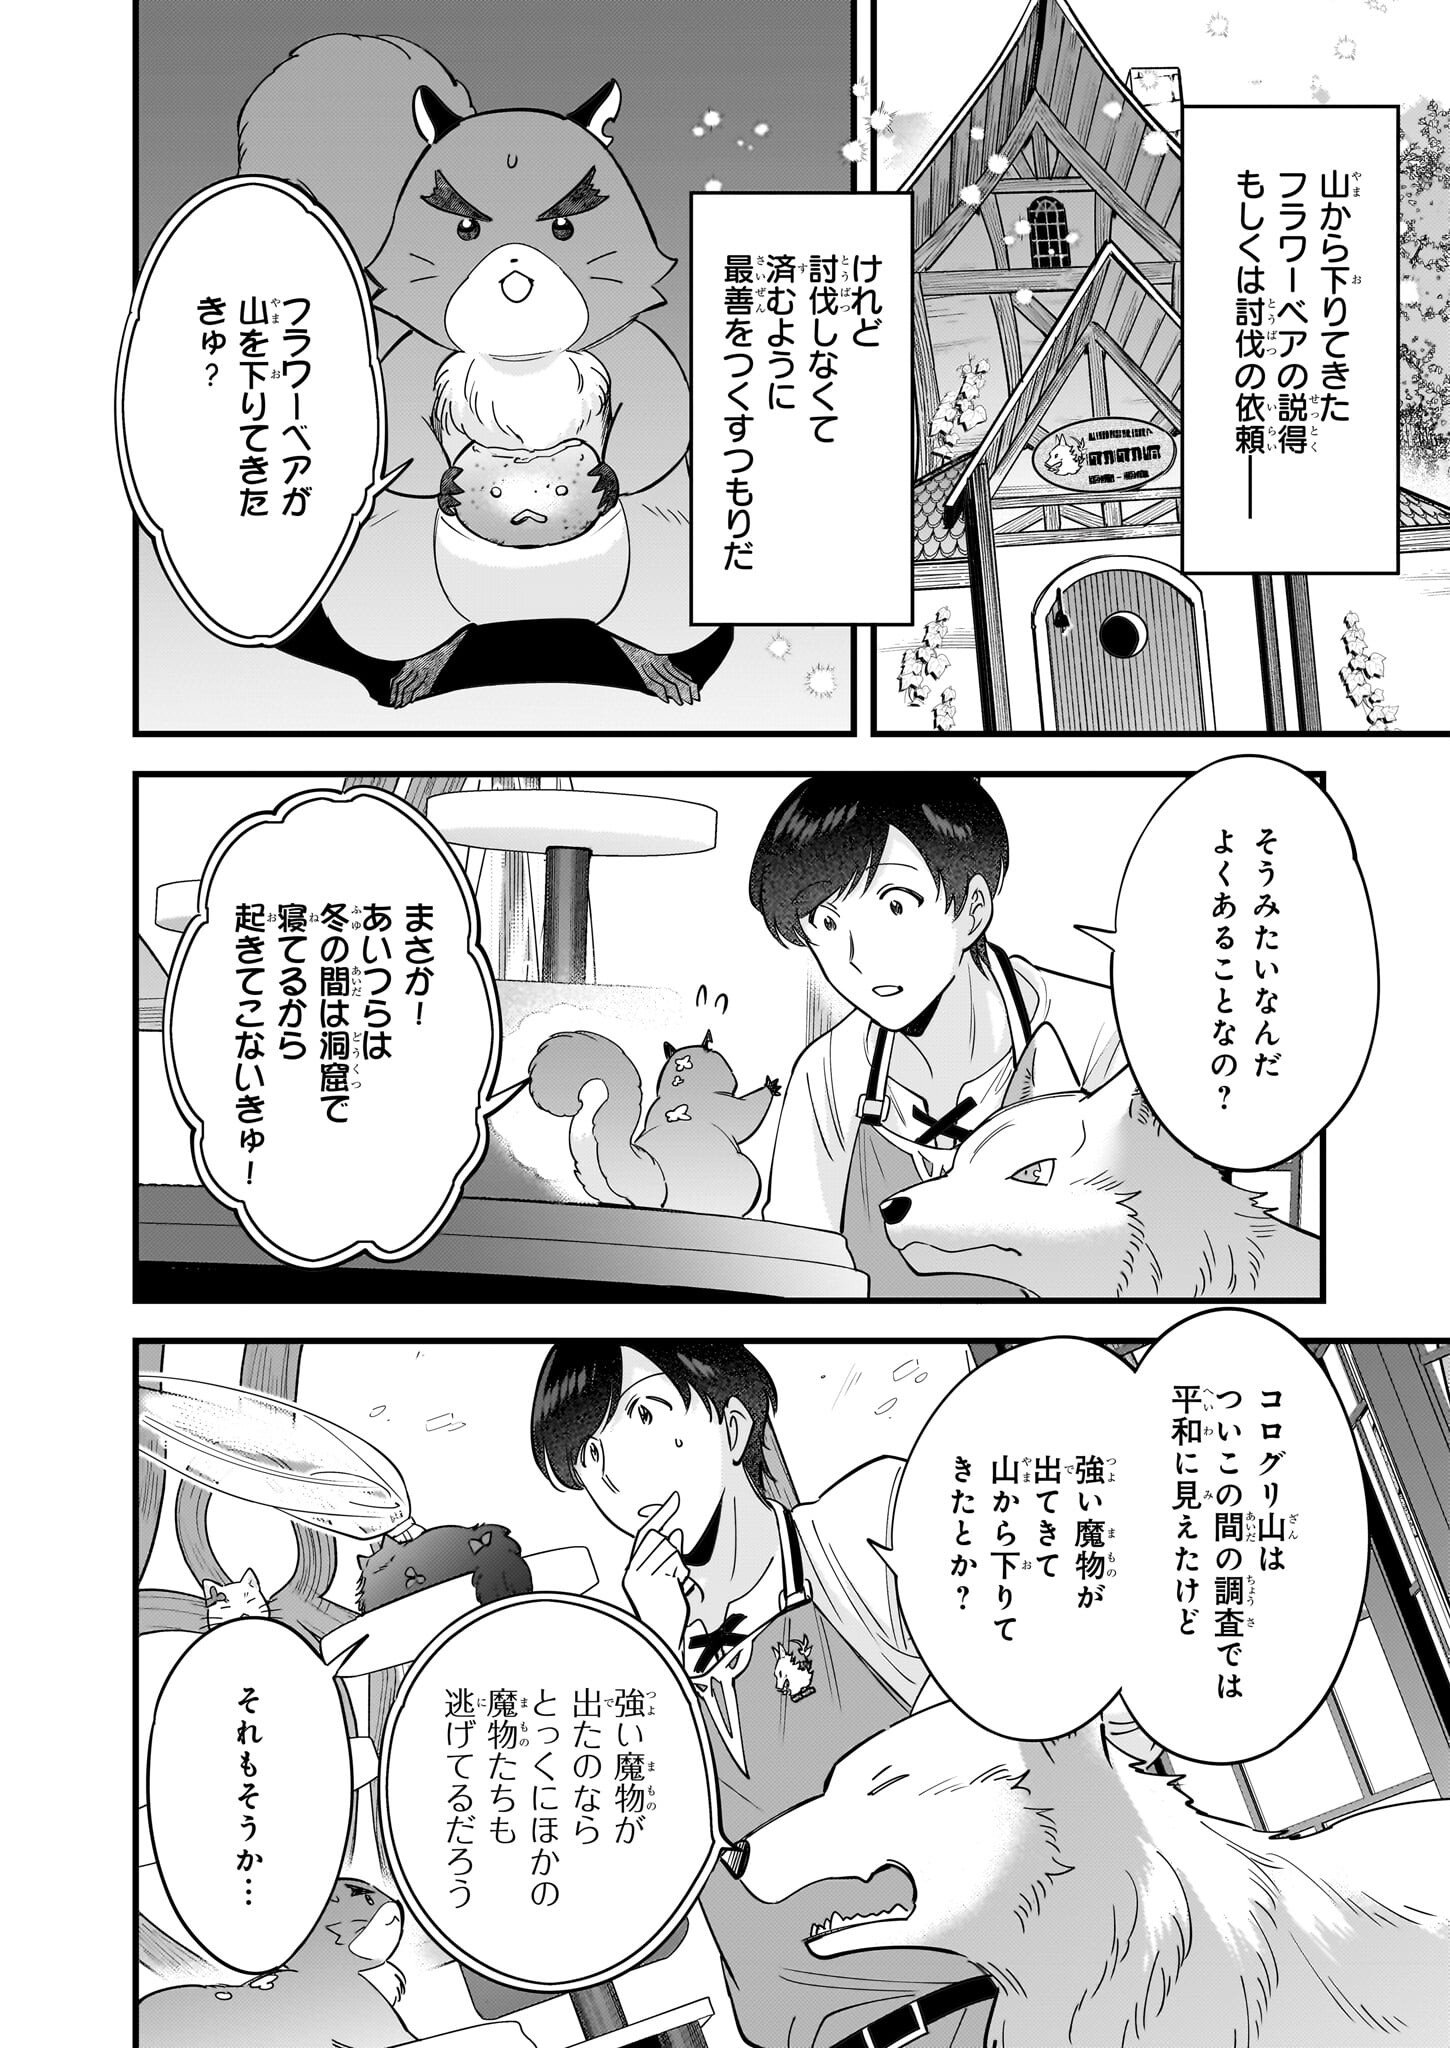 Isekai Mofumofu Cafe - Chapter 28 - Page 2